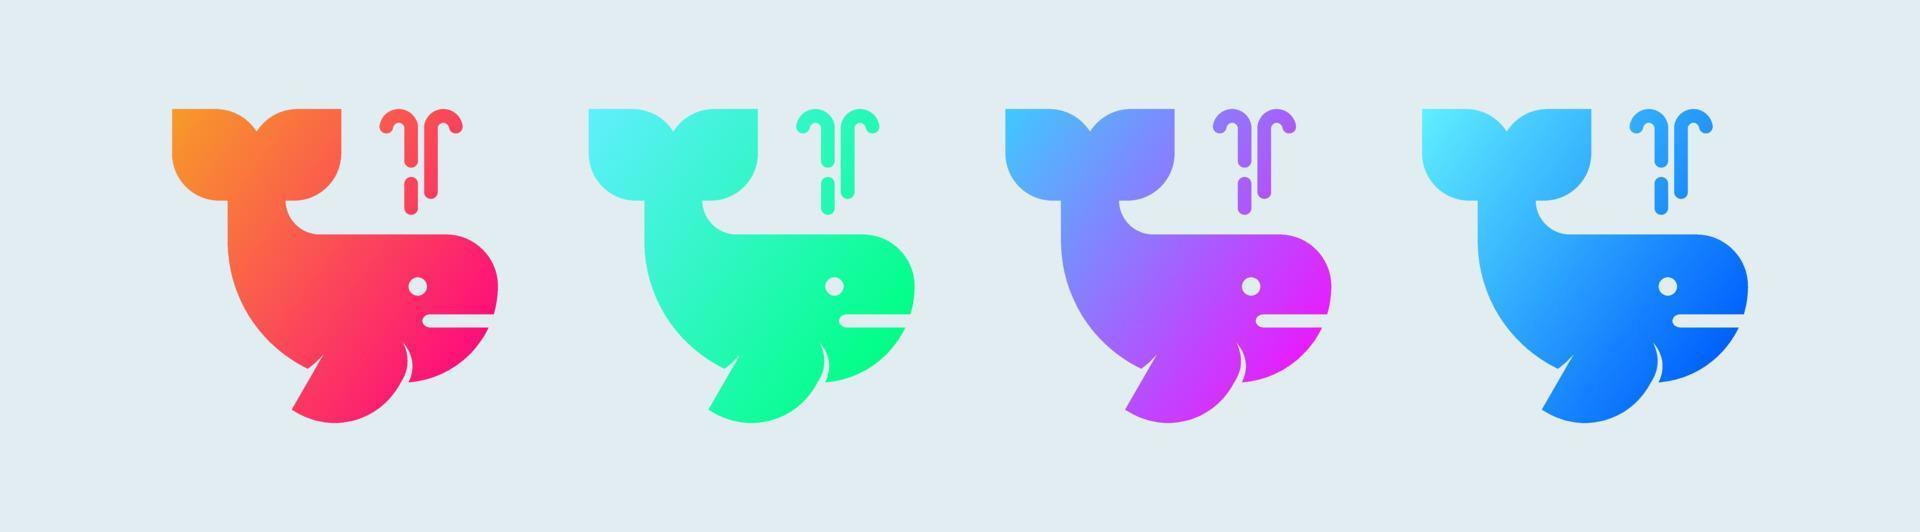 icône solide baleine en dégradé de couleurs. illustration vectorielle de signes de la faune océanique. vecteur